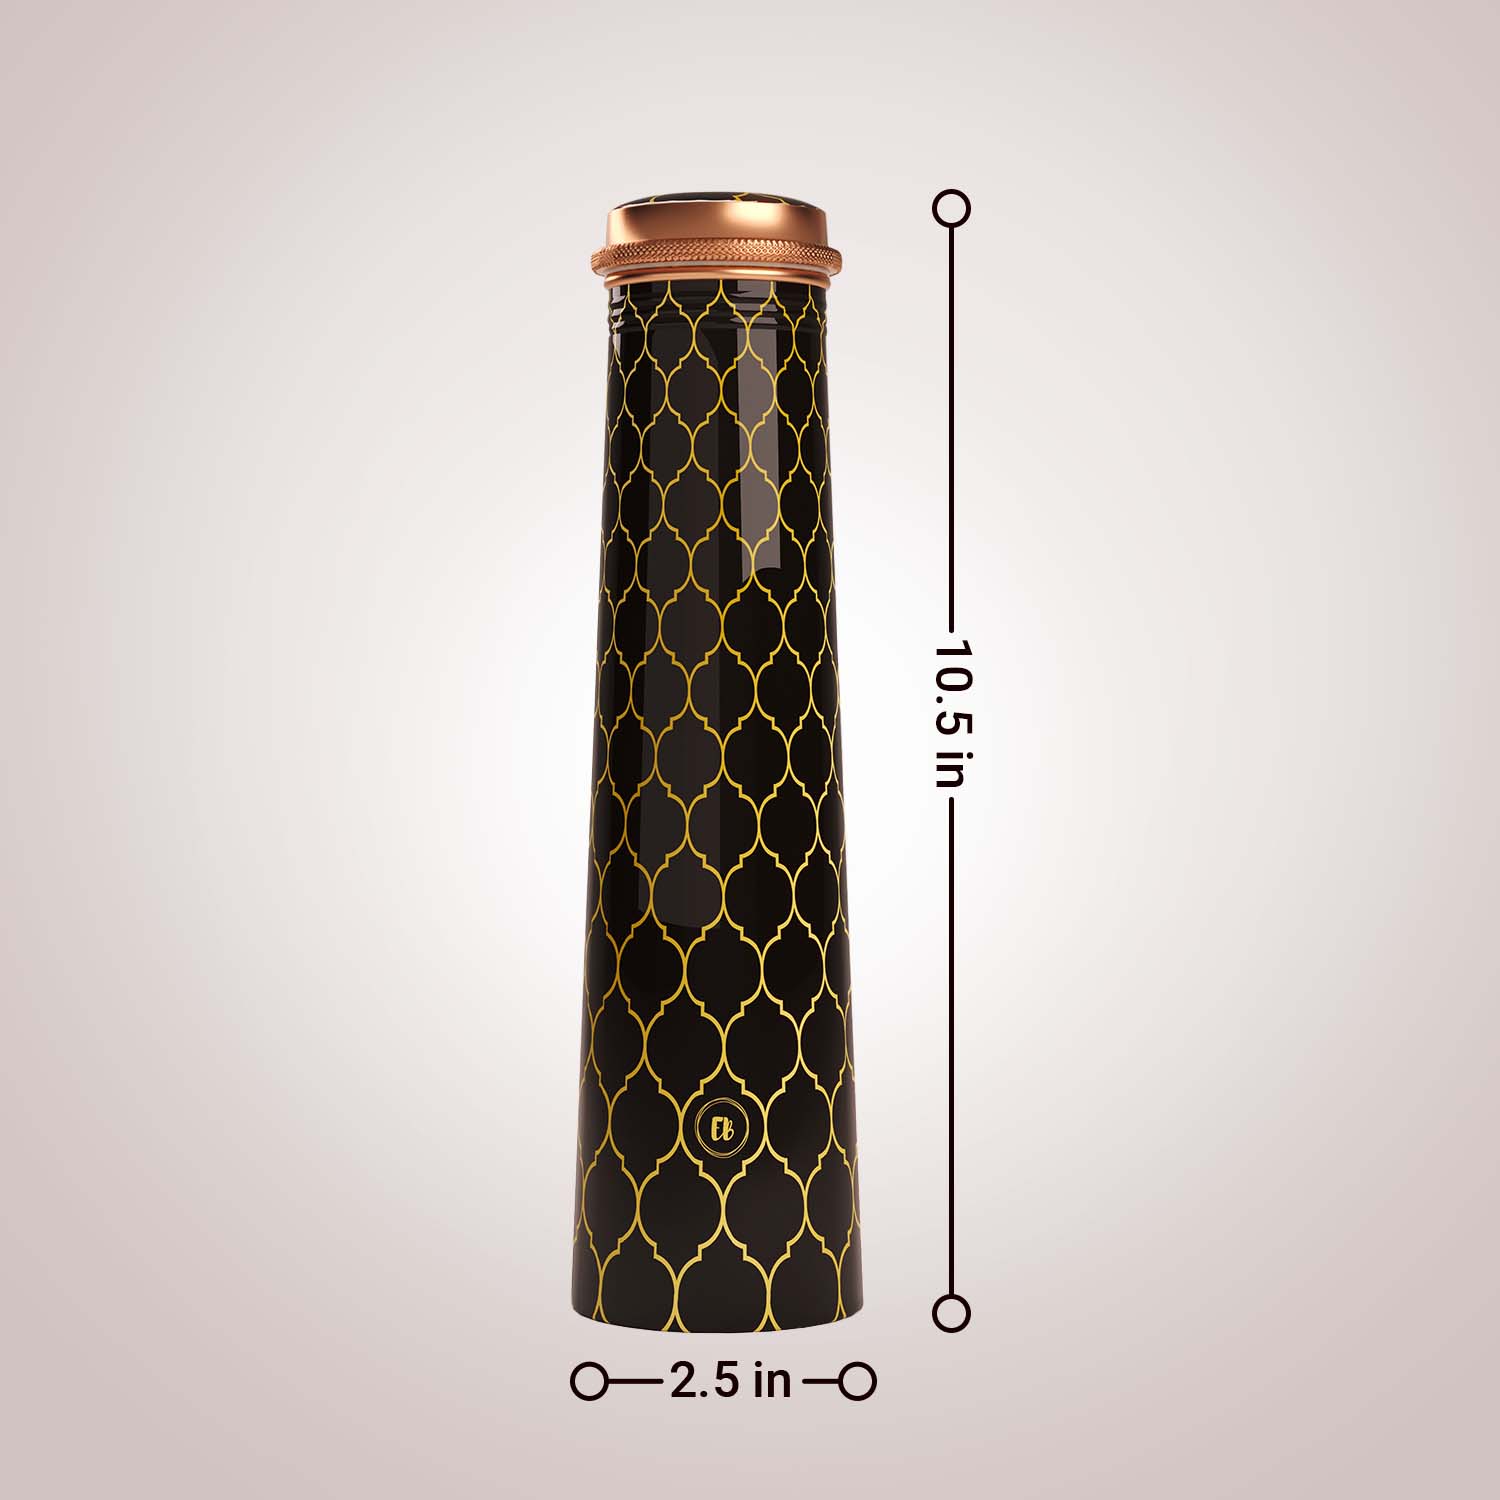 Black Gold Moroccan design copper bottle copper water bottle 750ml printed copper bottle benefits of copper water #color_black gold moroccan